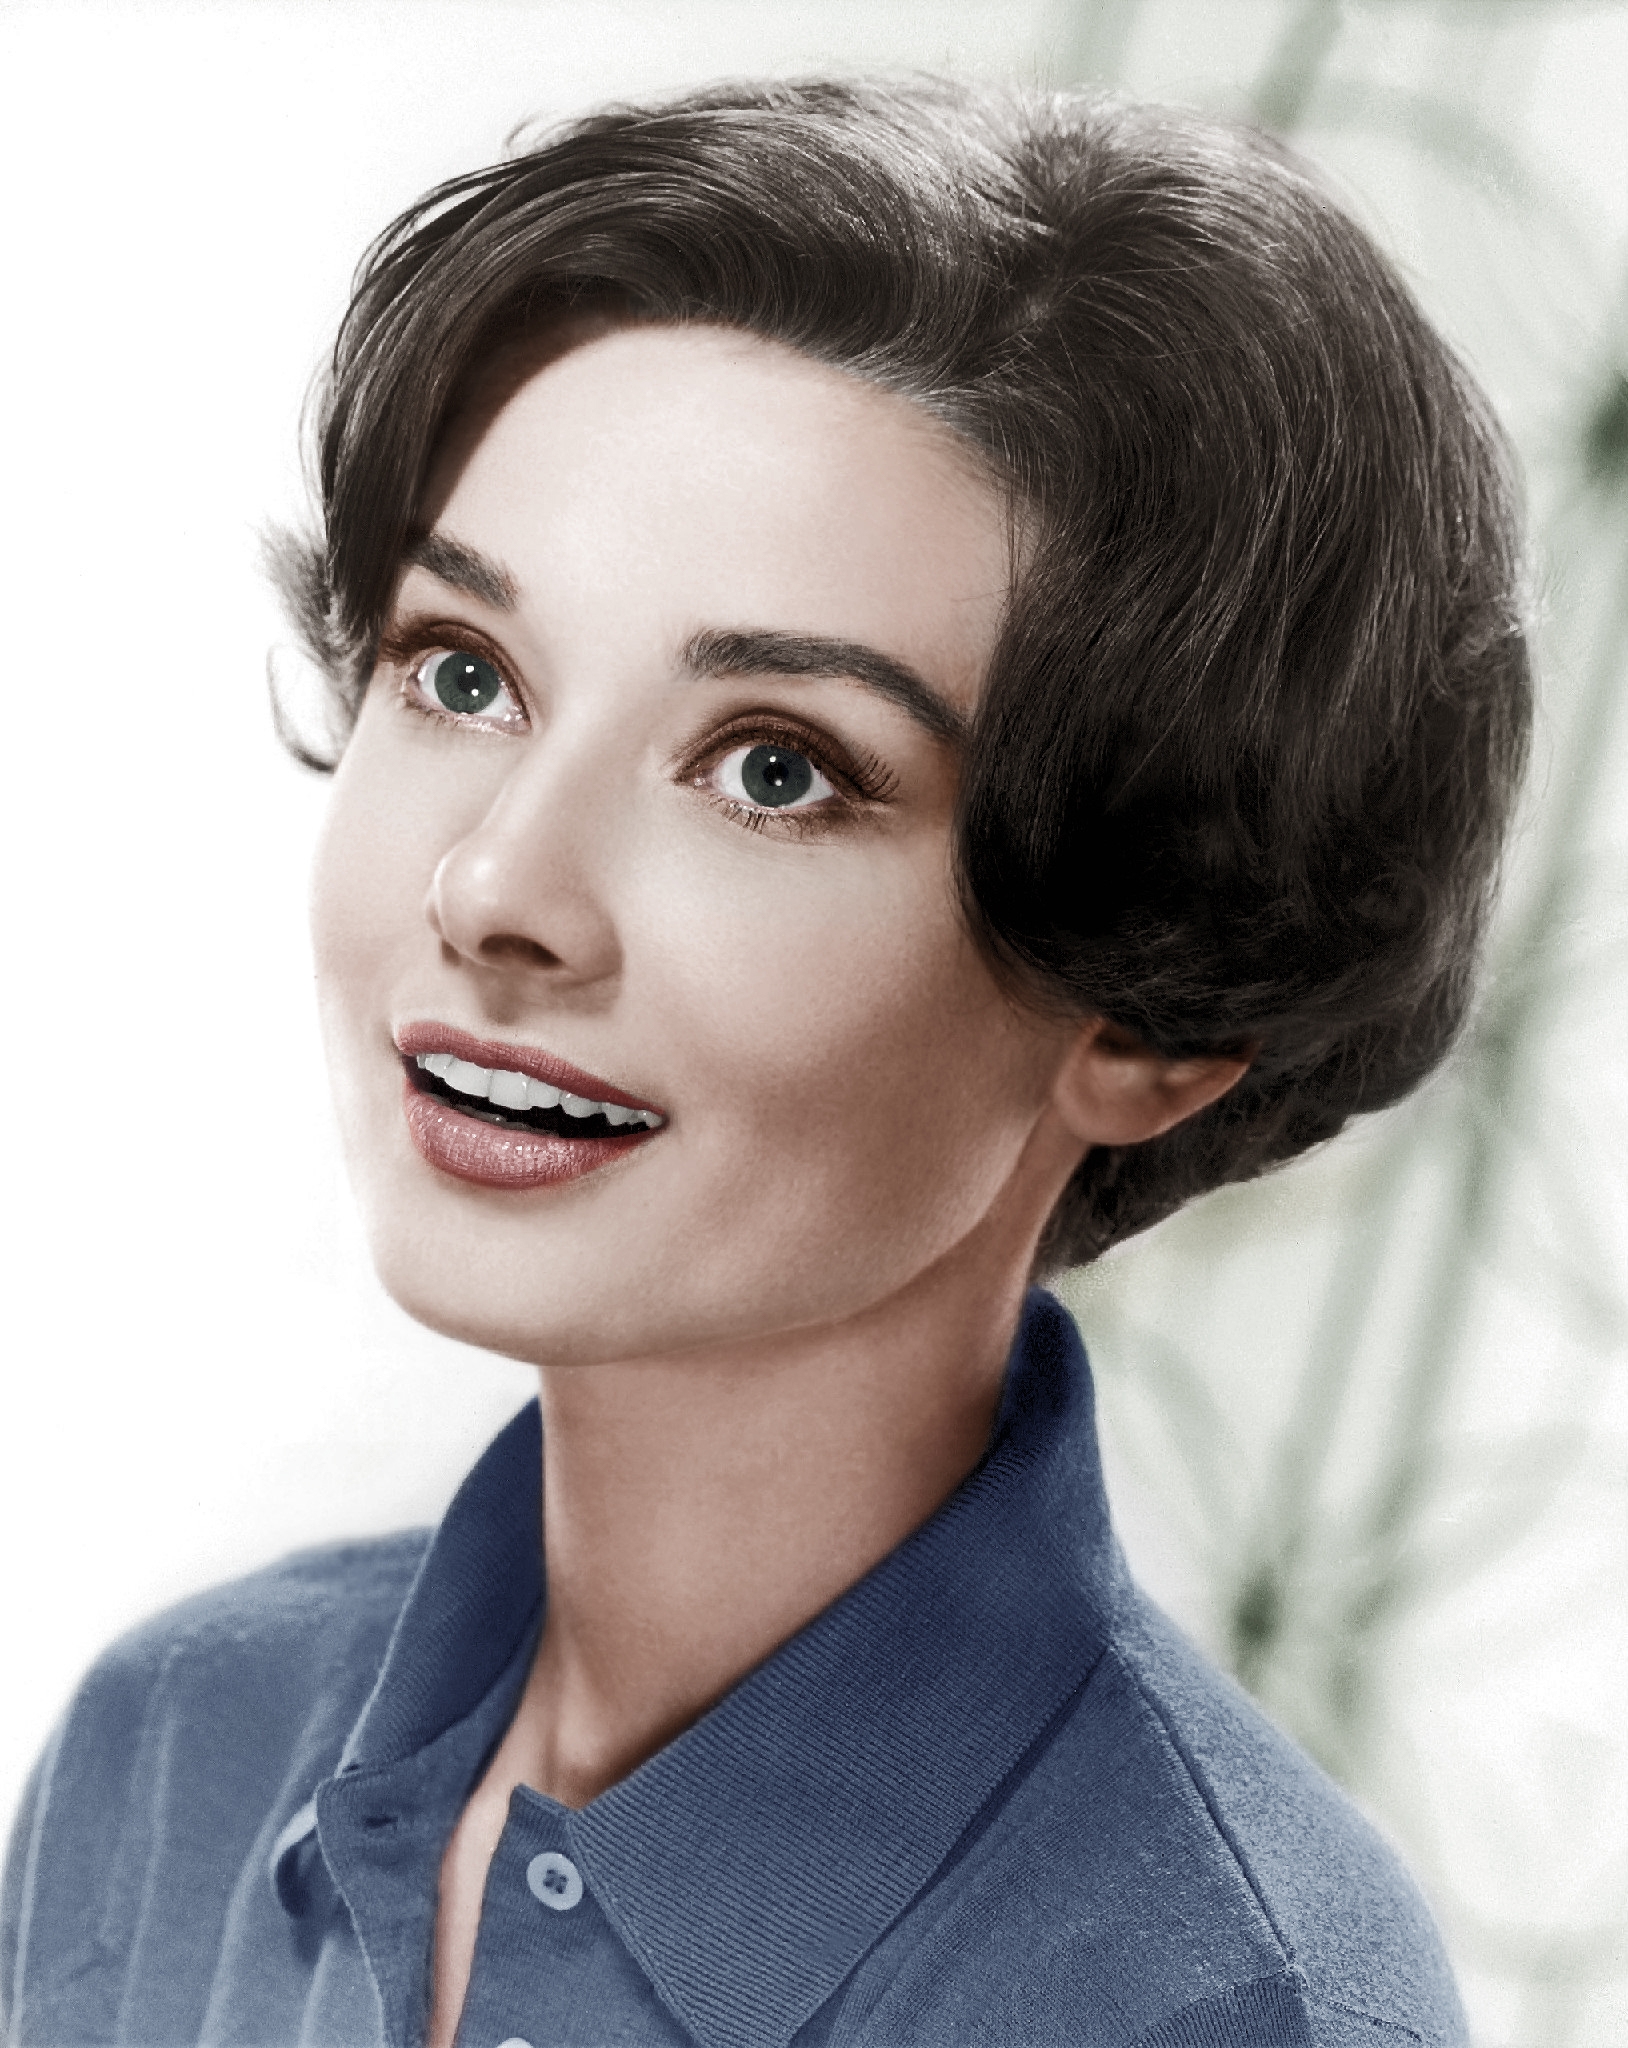 auteur Audrey Hepburn de la citation Je n'ai jamais pensé que j'atterrirais sur des photos avec un visage comme le mien.